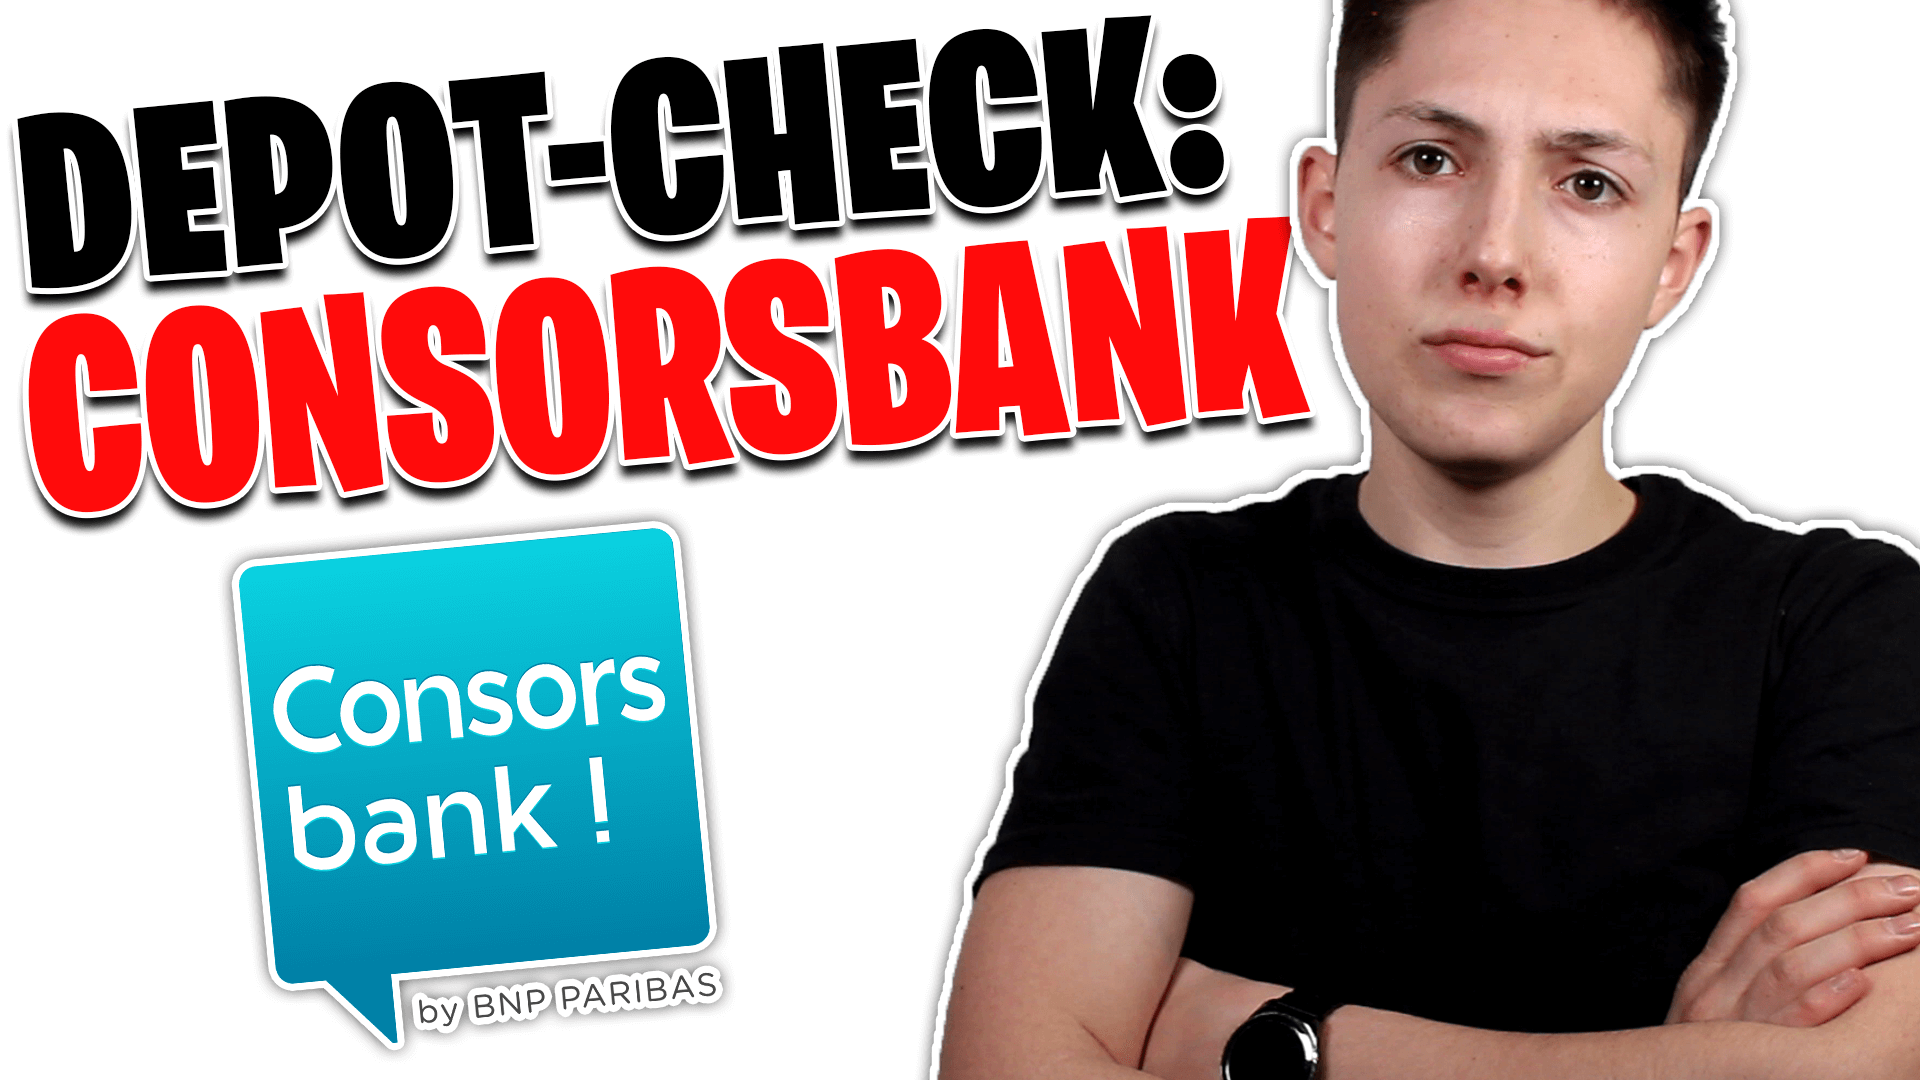 Consorsbank Depot Test